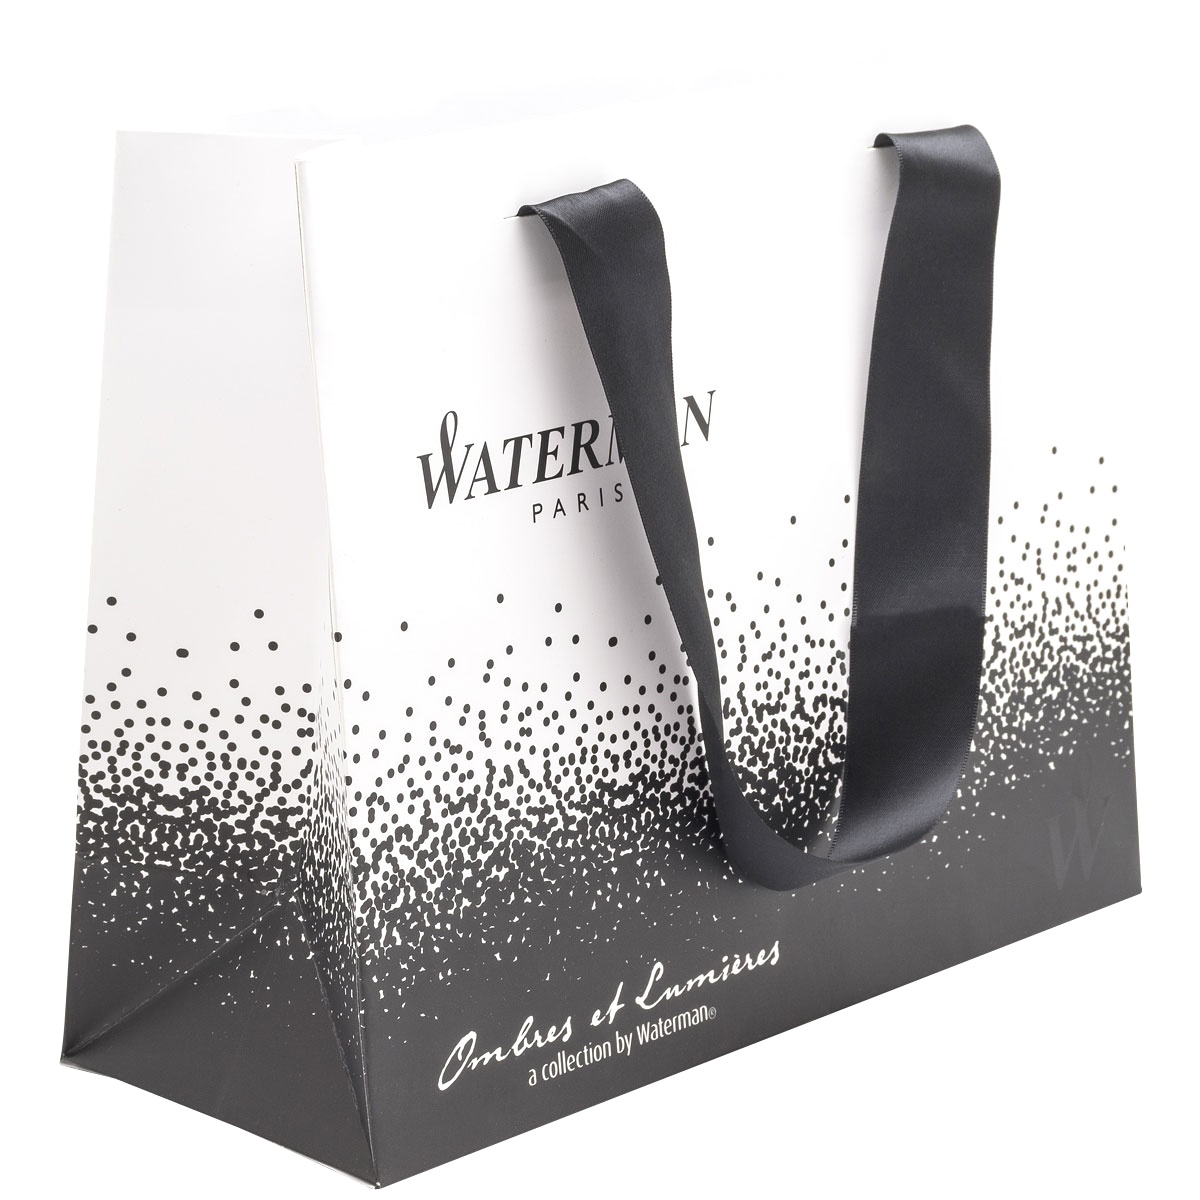  Фирменный подарочный пакет WATERMAN OMBRES&LUMIERE, Большой, бумажный, черно-белый, 28*22.5*11 см.